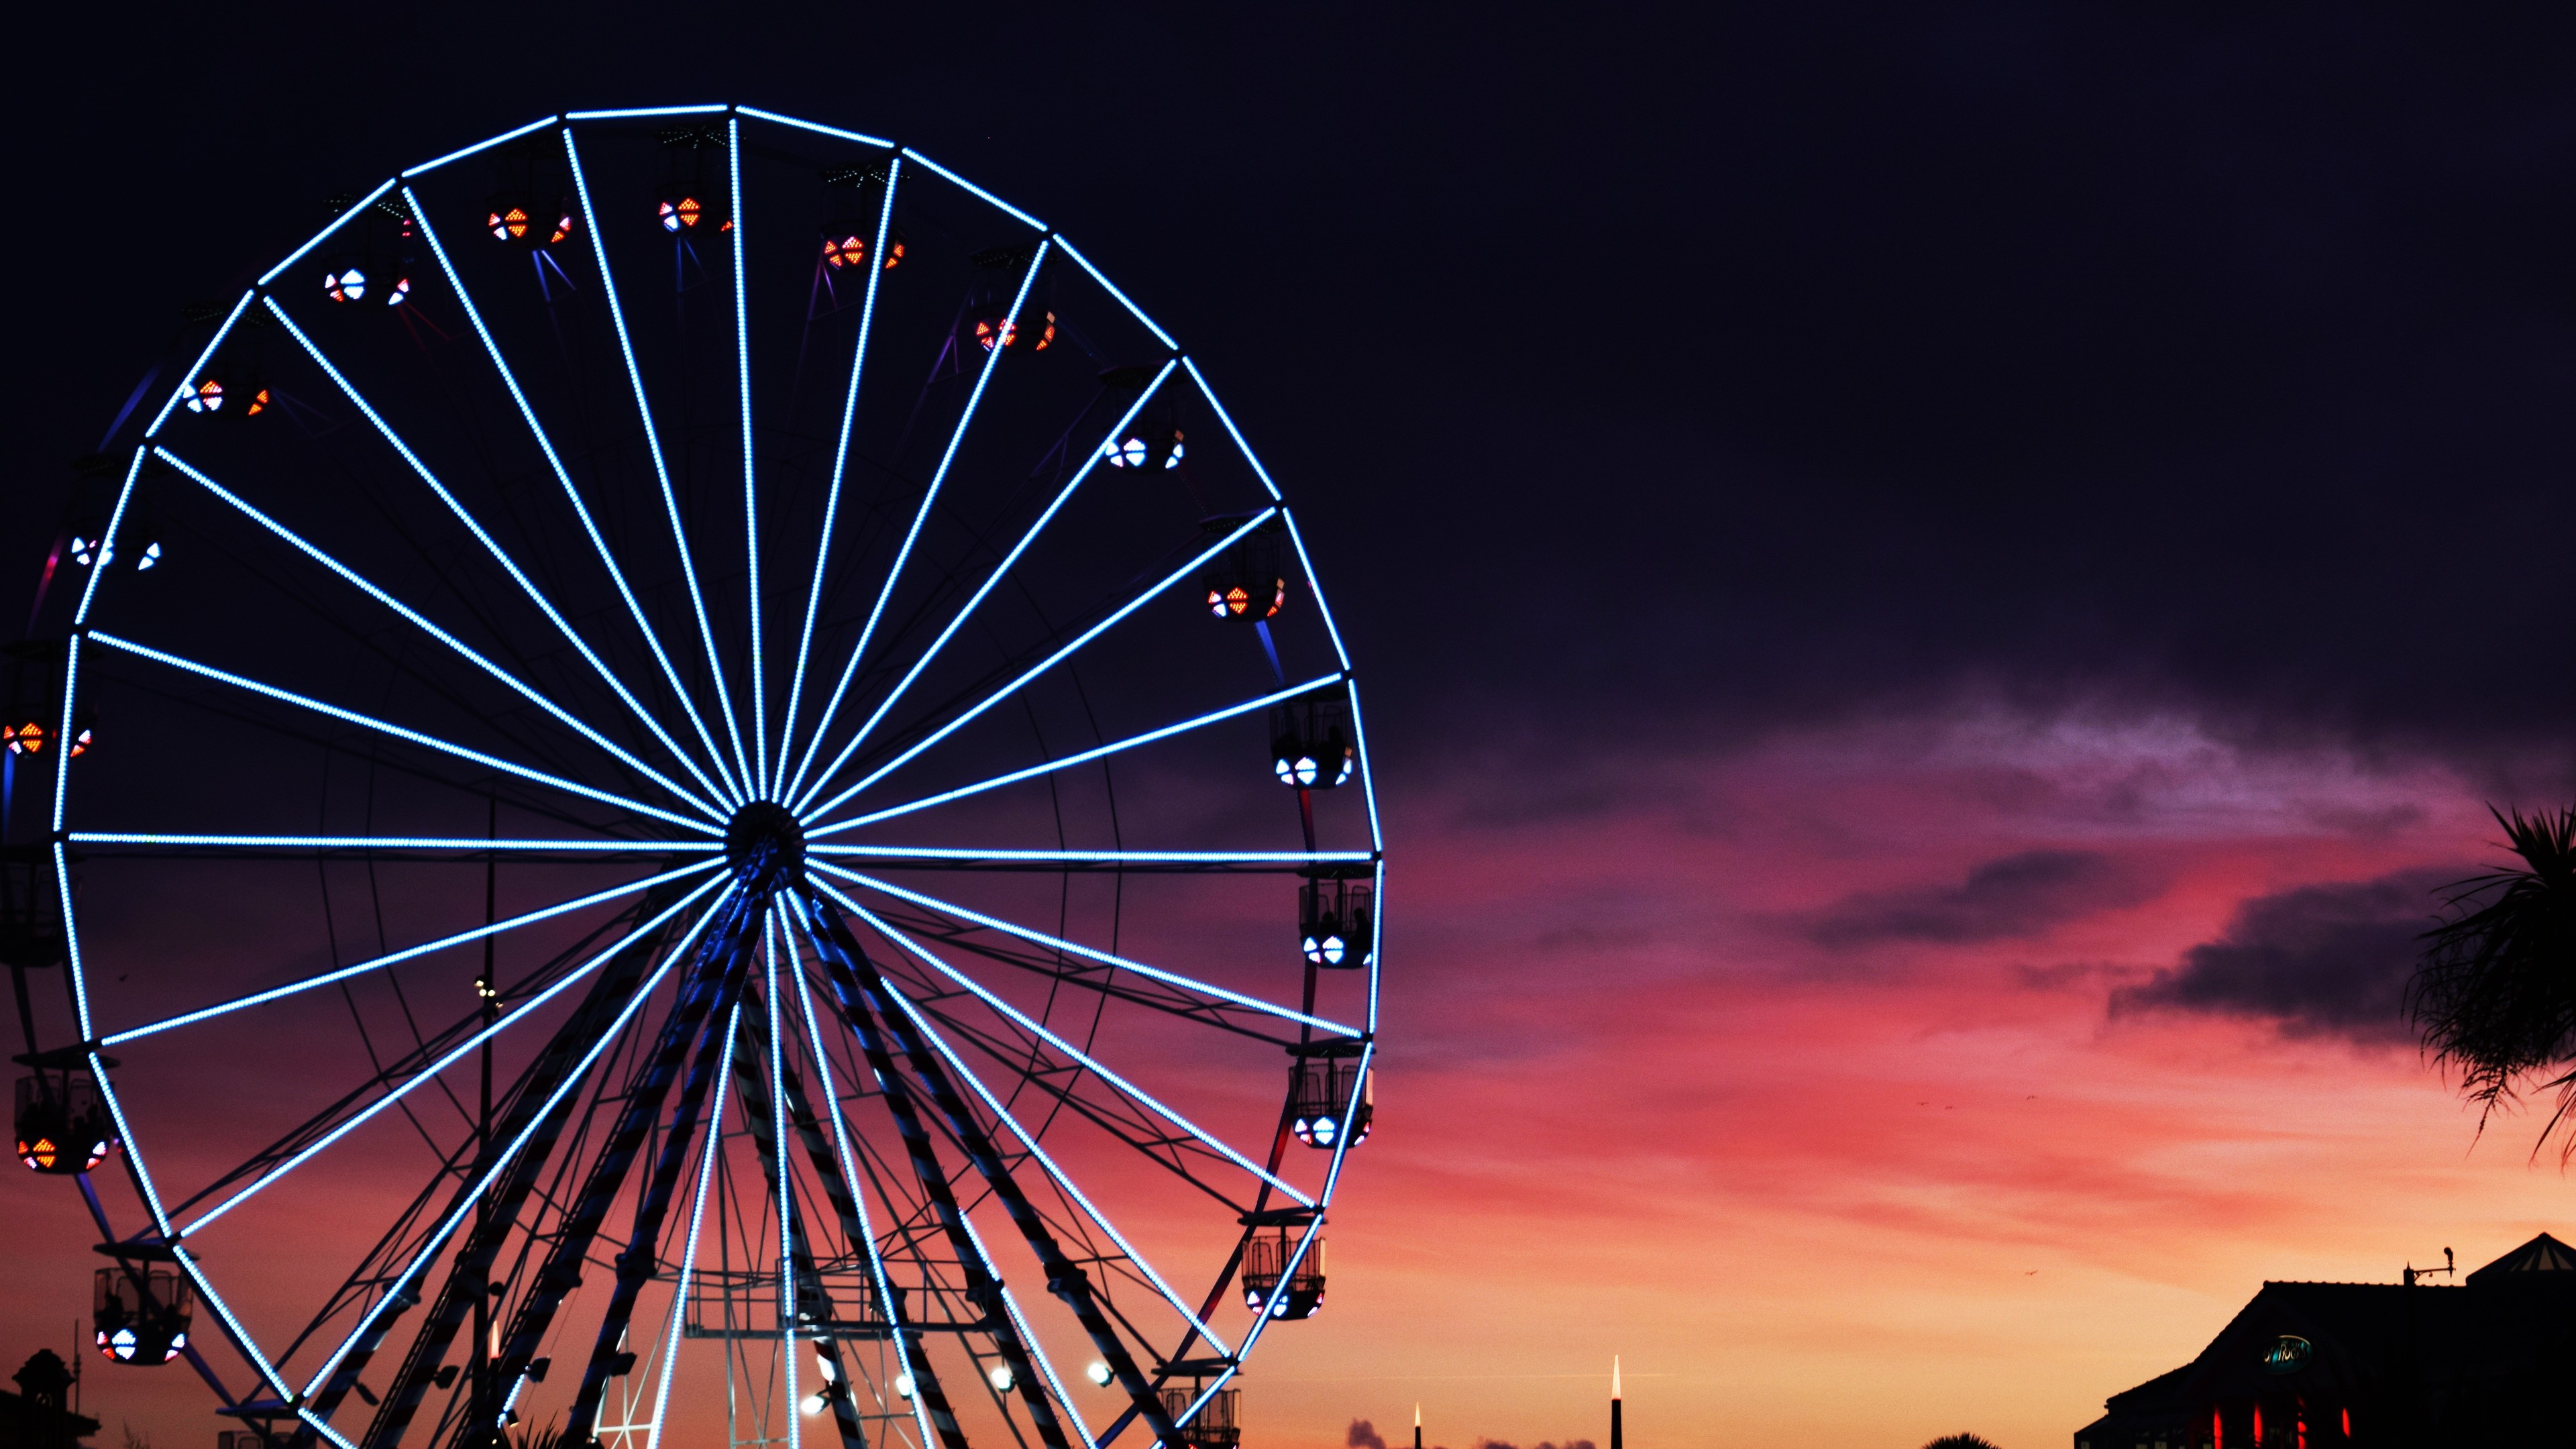 Ferris Wheel Sunset Clouds 4k - Ferris Wheel - HD Wallpaper 